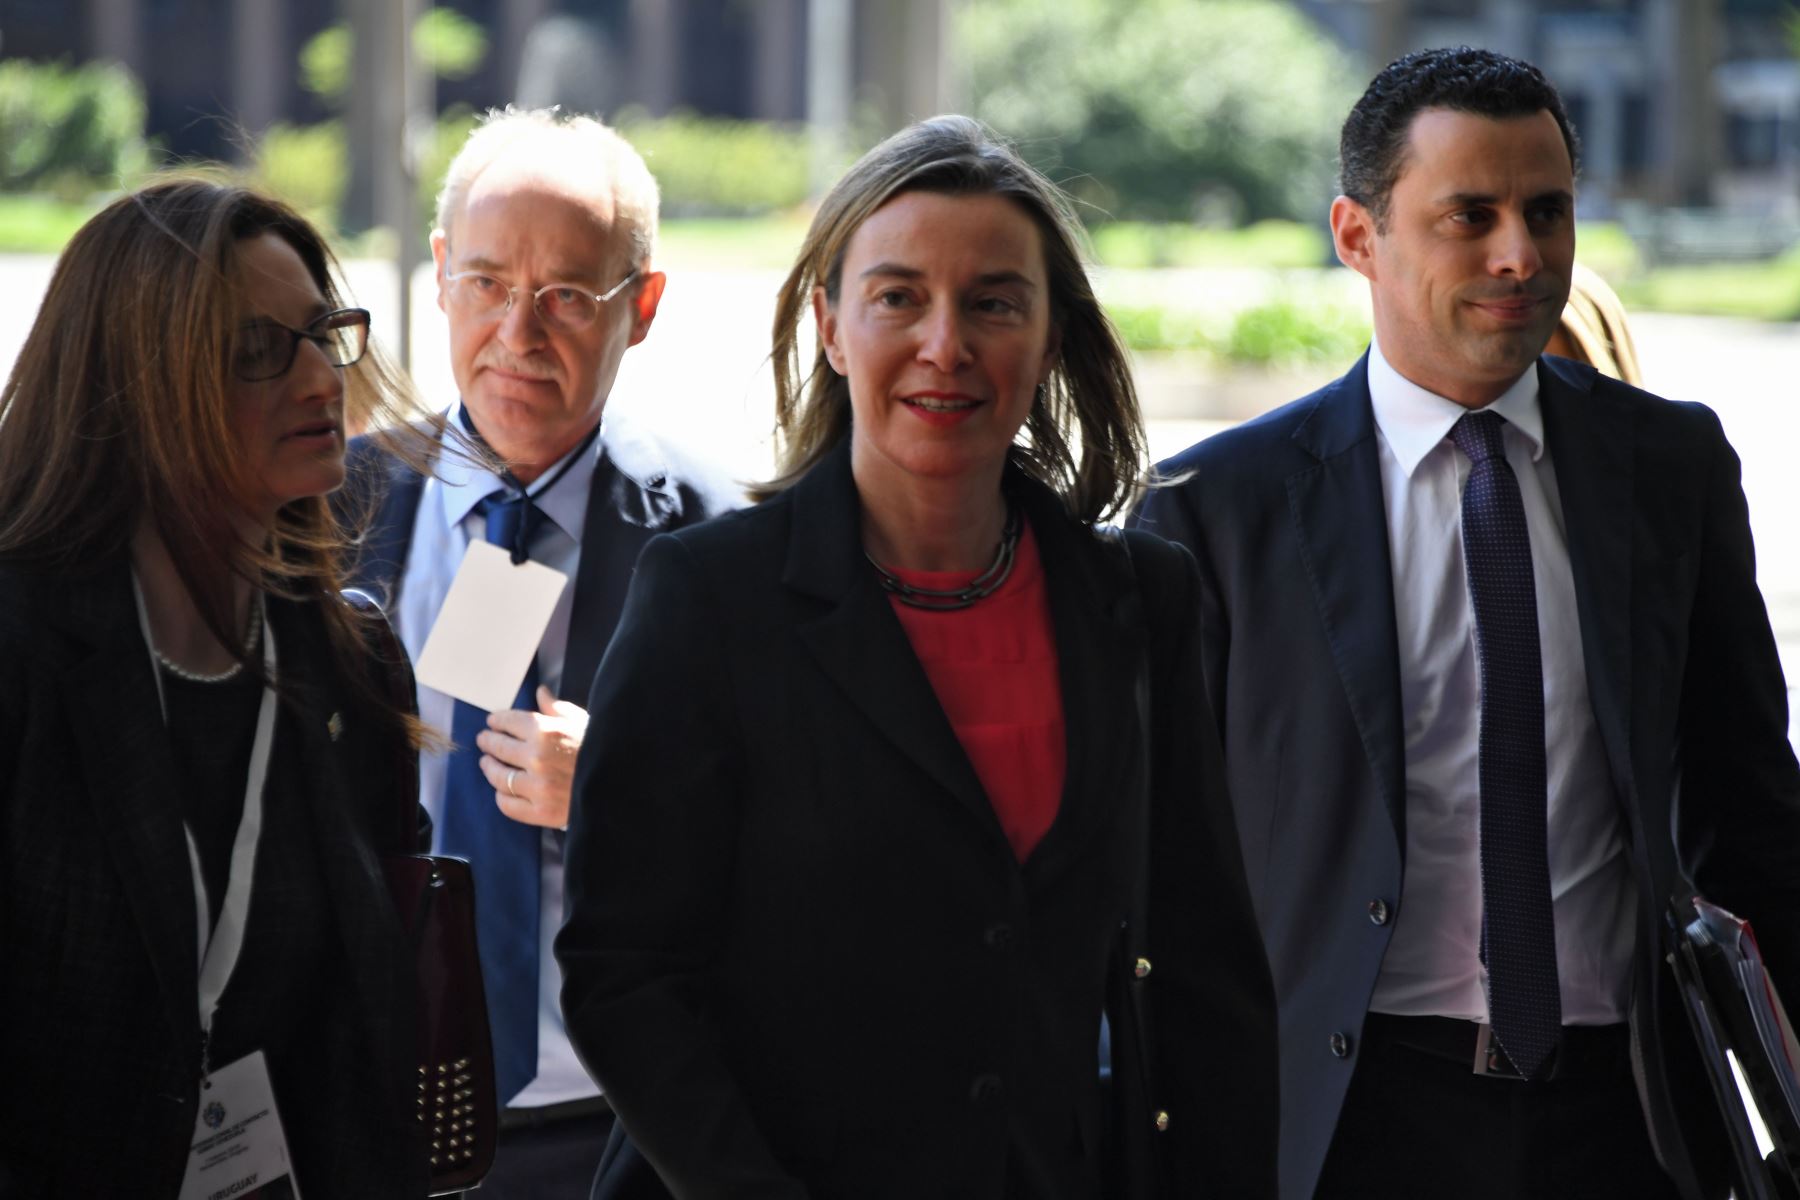 La alta representante de la Unión Europea para Asuntos Exteriores y Política de Seguridad, Federica Mogherini llega a una reunión sobre Venezuela en Montevideo Foto: AFP